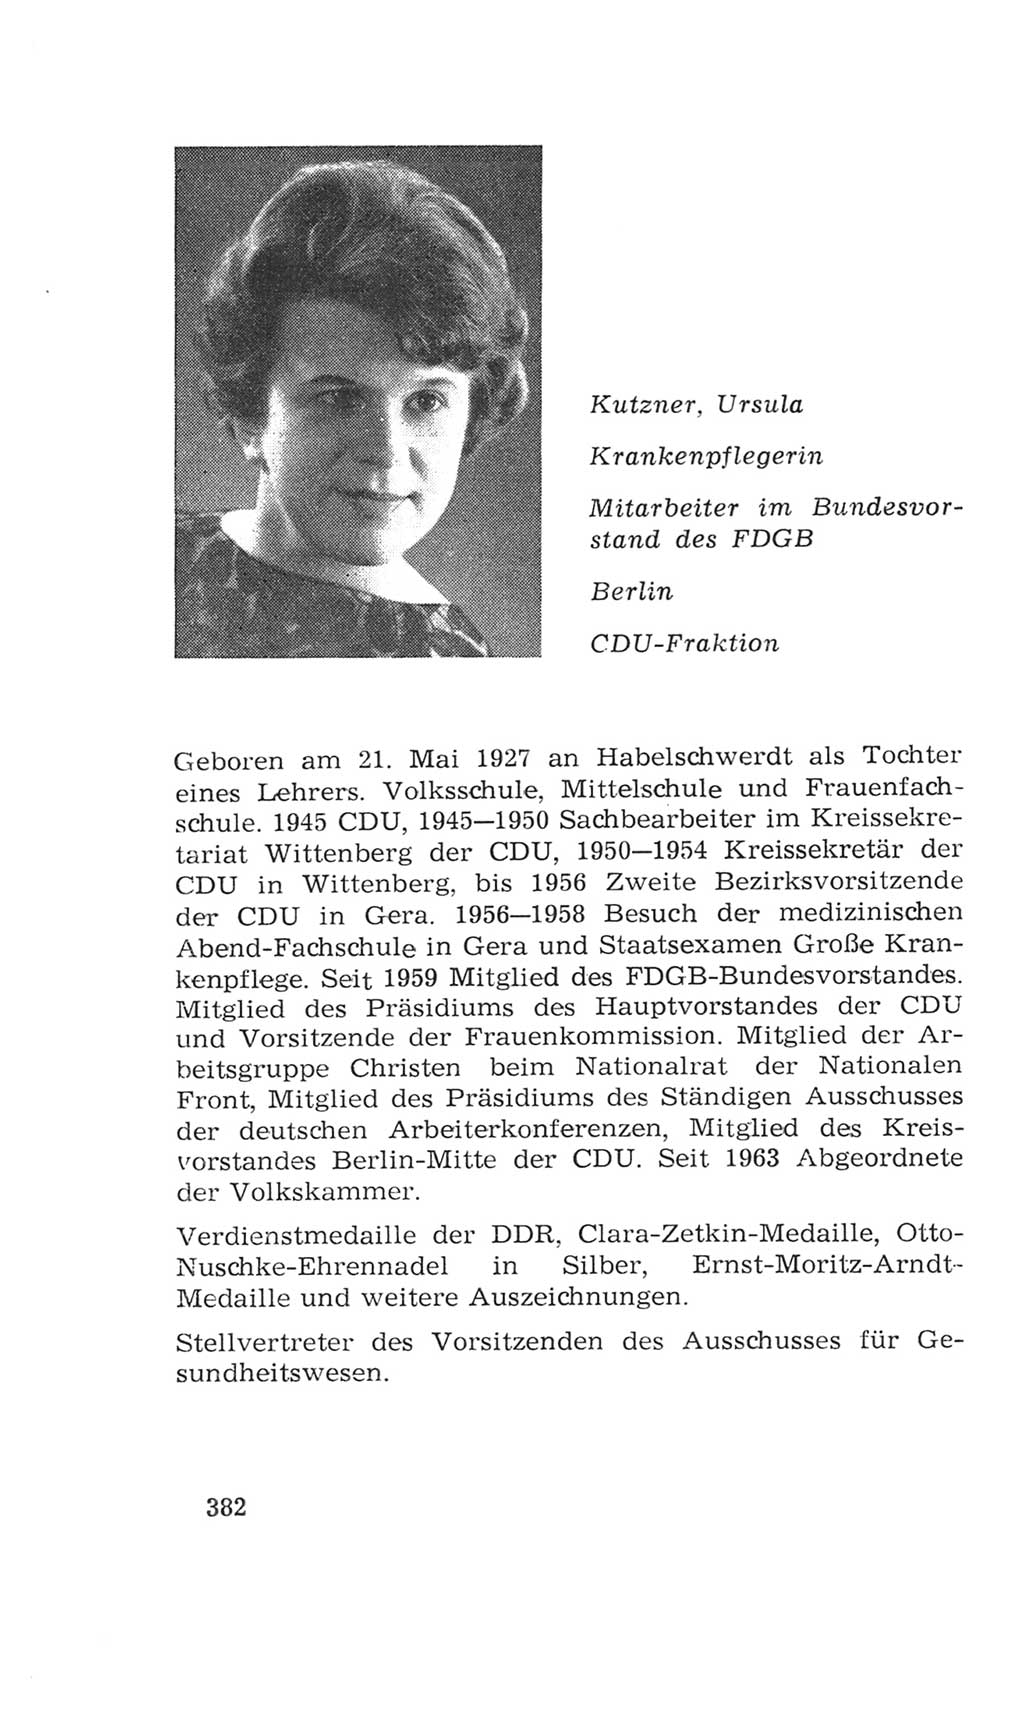 Volkskammer (VK) der Deutschen Demokratischen Republik (DDR), 4. Wahlperiode 1963-1967, Seite 382 (VK. DDR 4. WP. 1963-1967, S. 382)